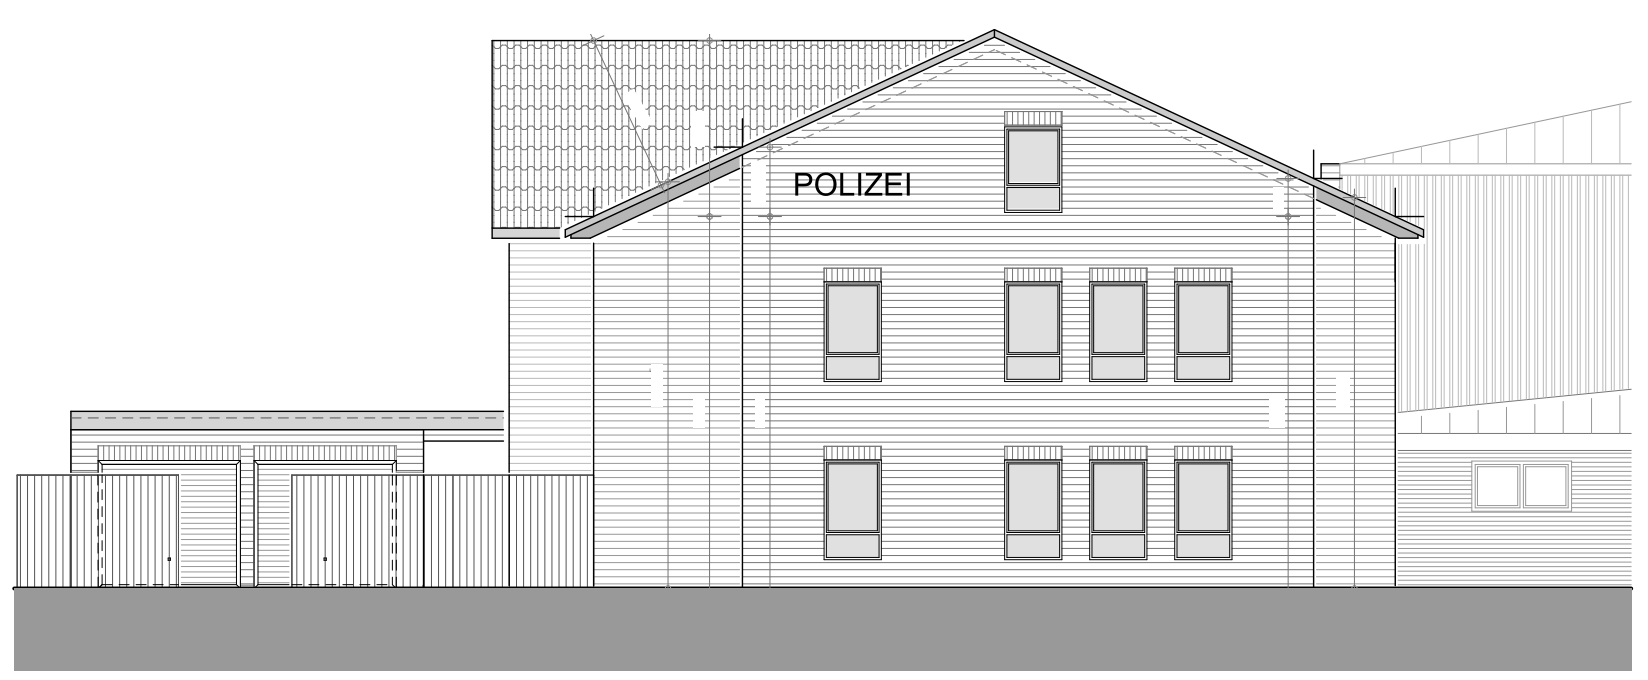 Skizze Neubau Polizeigebäude an Bestandsgebäude in Schleswig Holstein